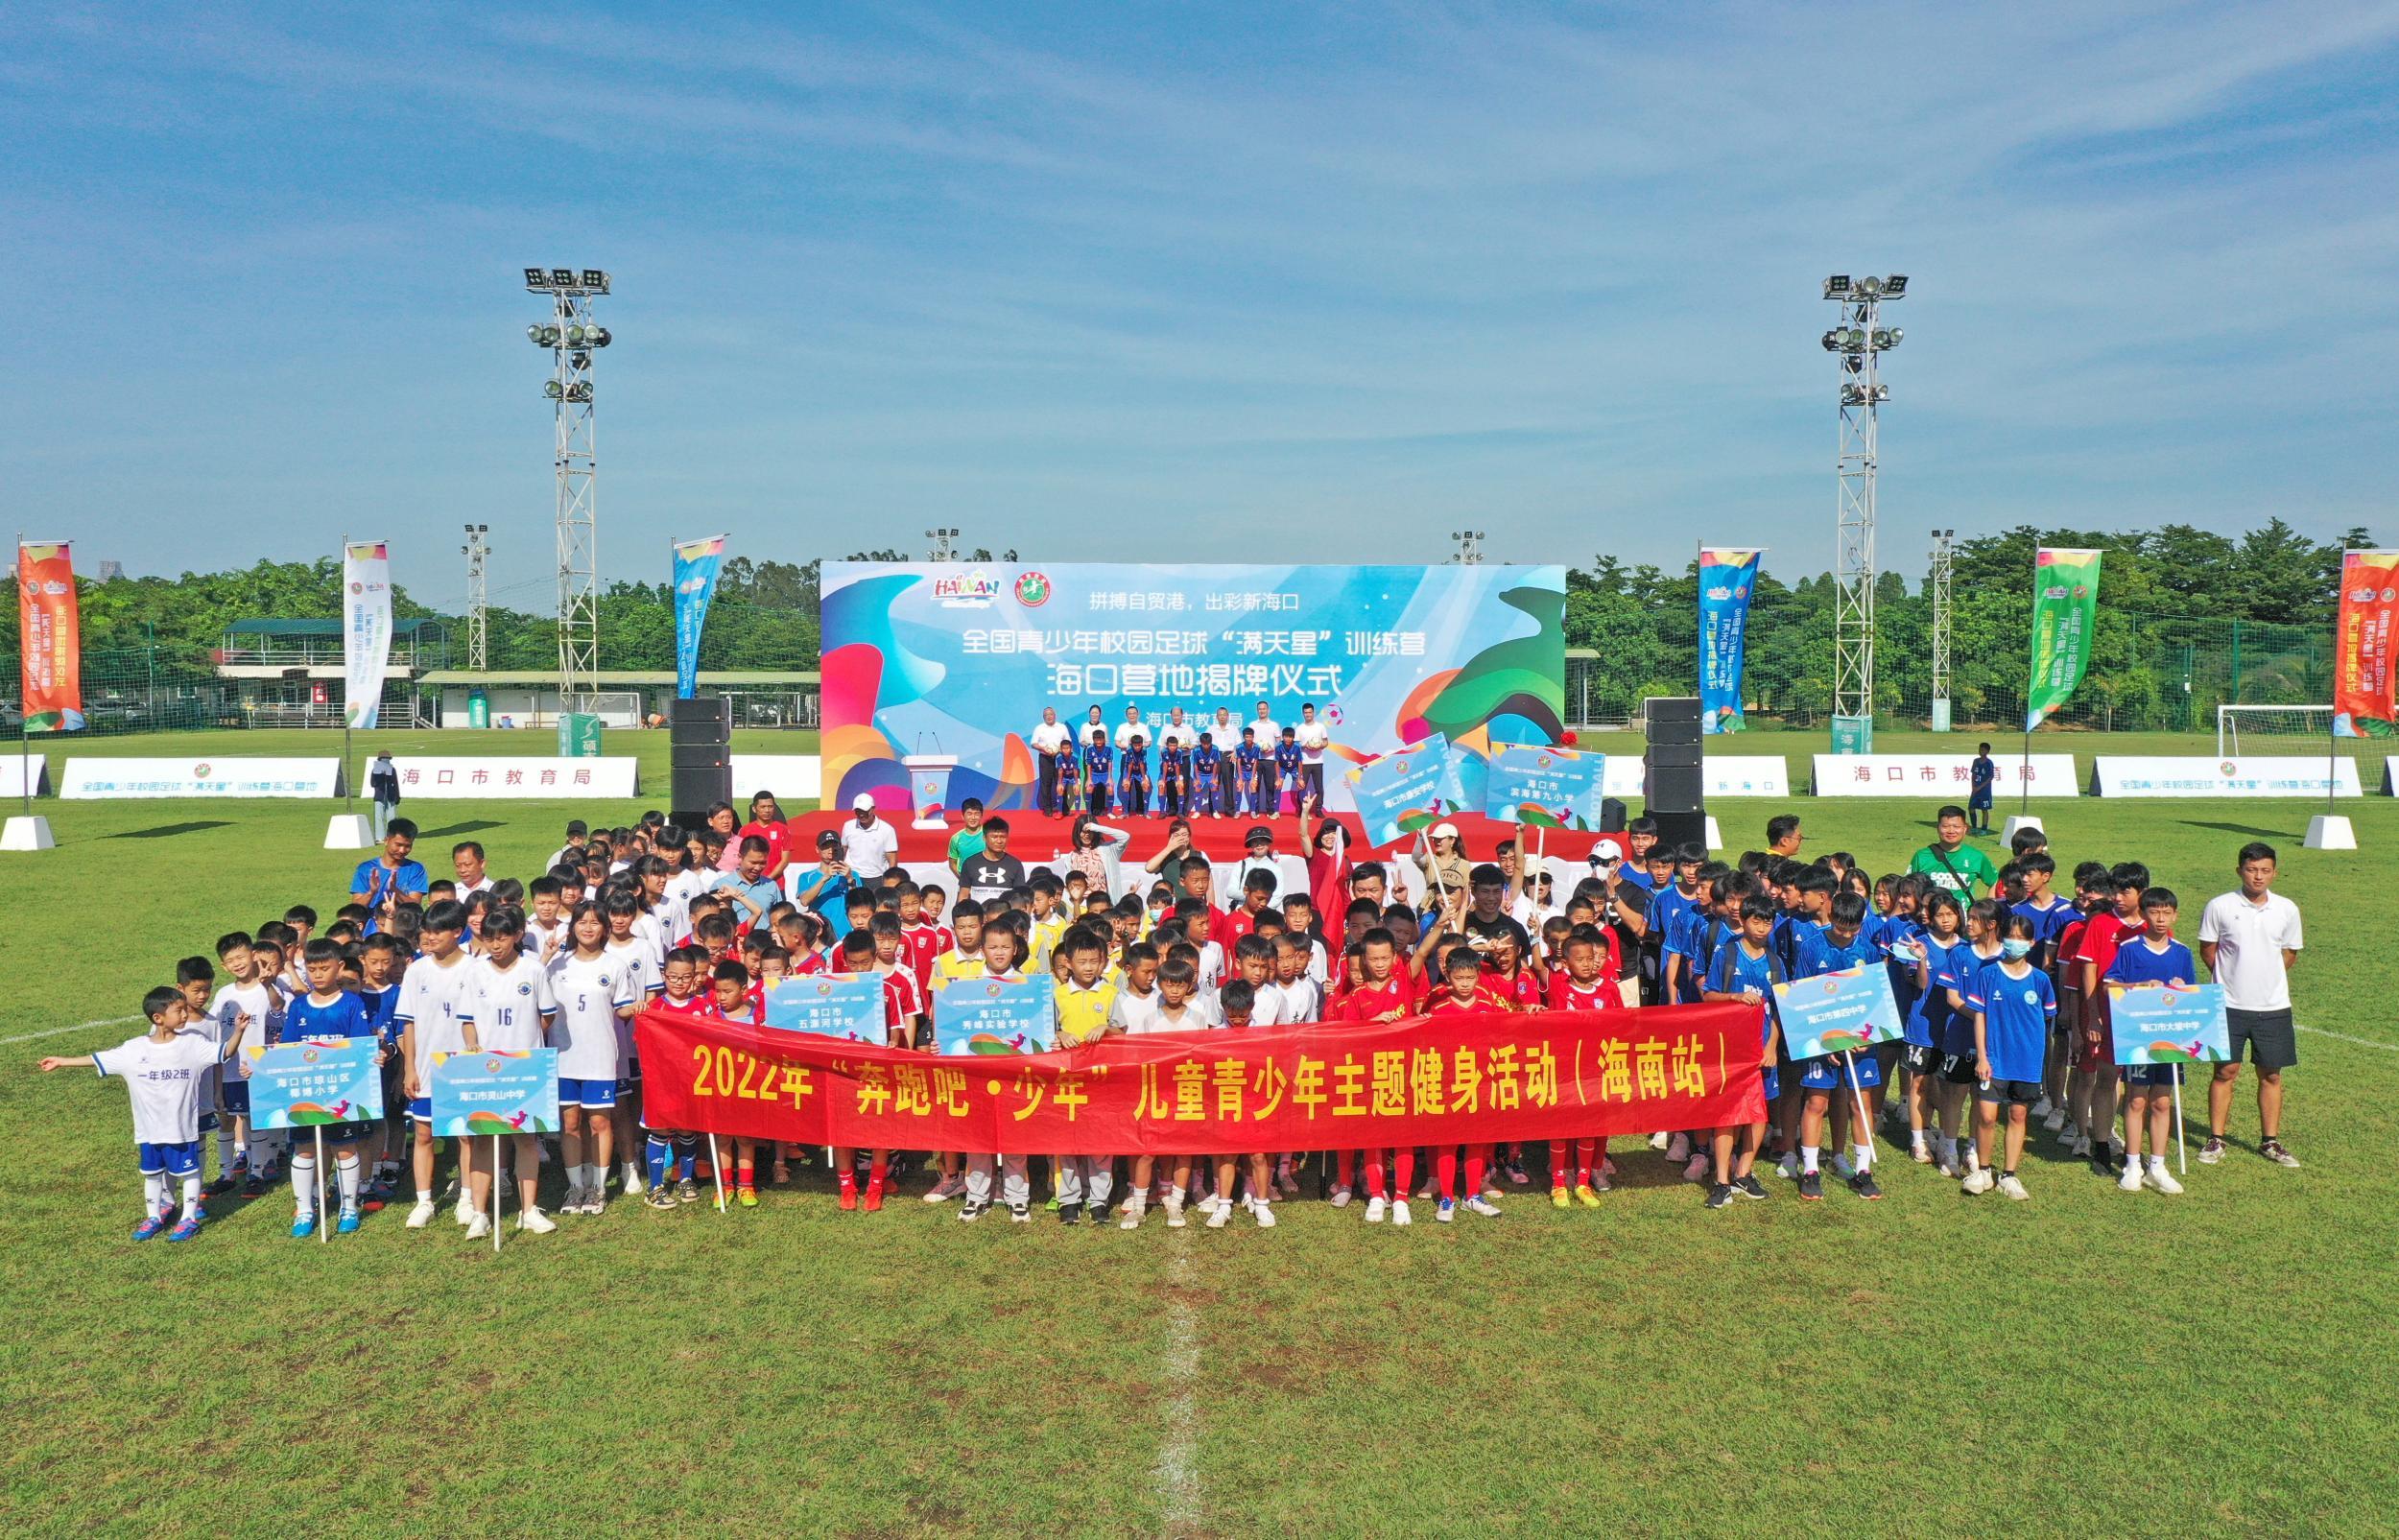 原创组图 | 2022年度全国青少年校园足球“满天星”训练营海口营地揭牌